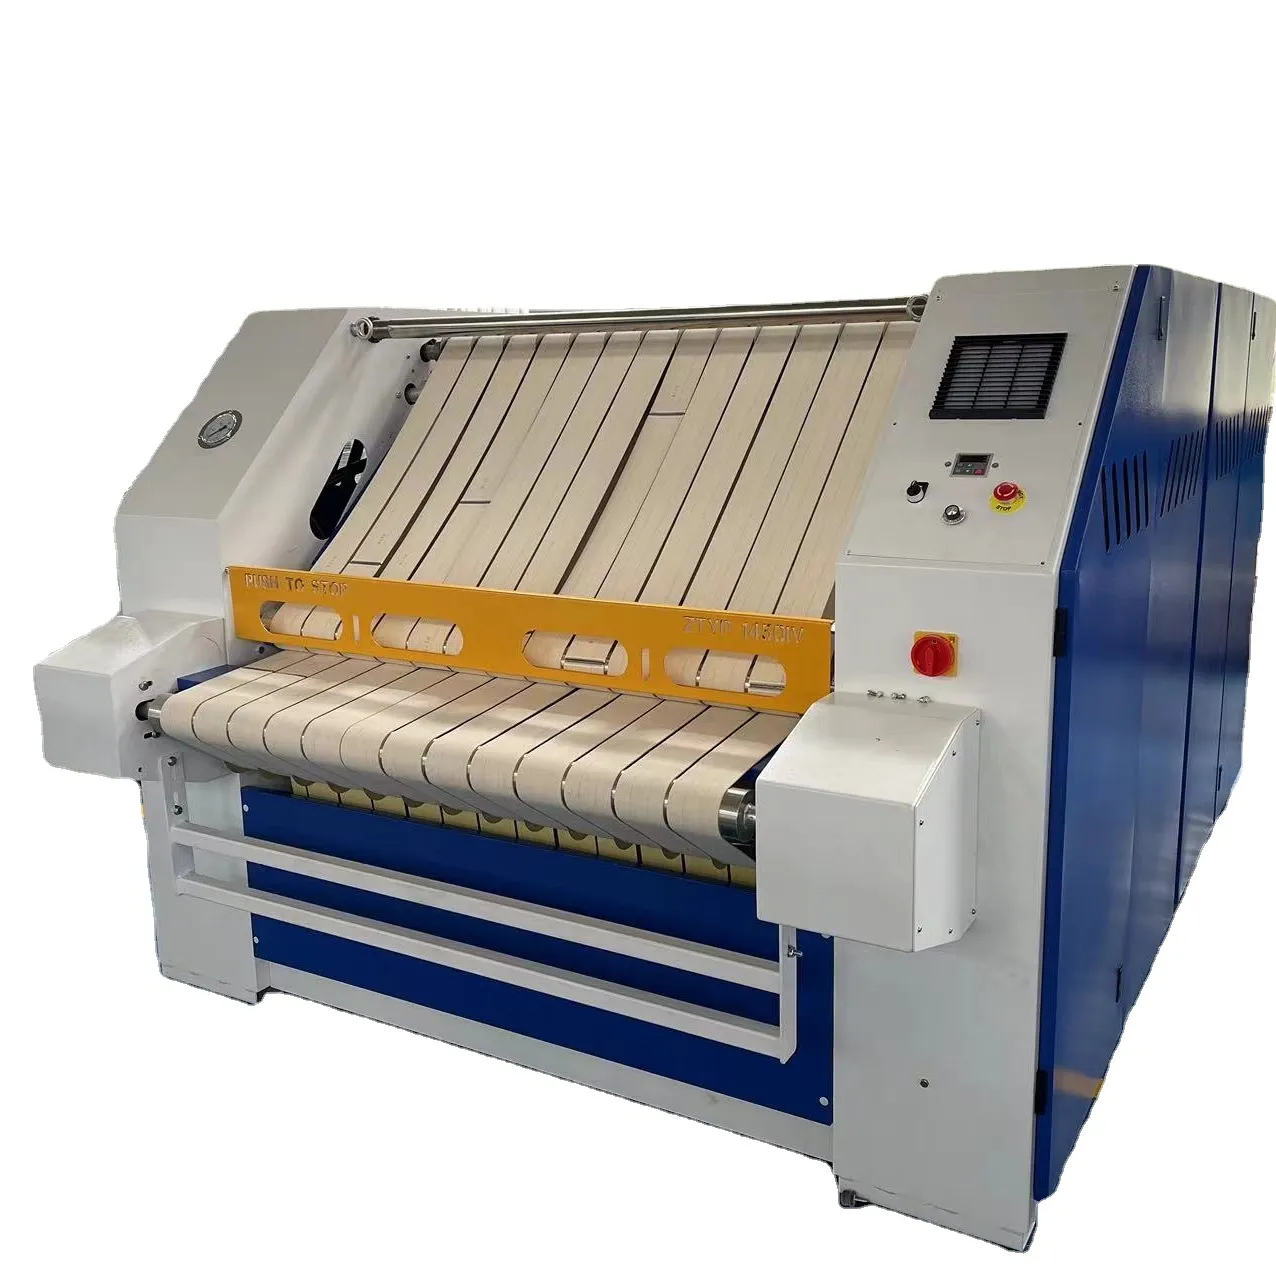 HOOP mesin setrika komersial profesional pengering cuci industri khusus untuk seprai sarung bantal Rumah Sakit digunakan roller 4-6